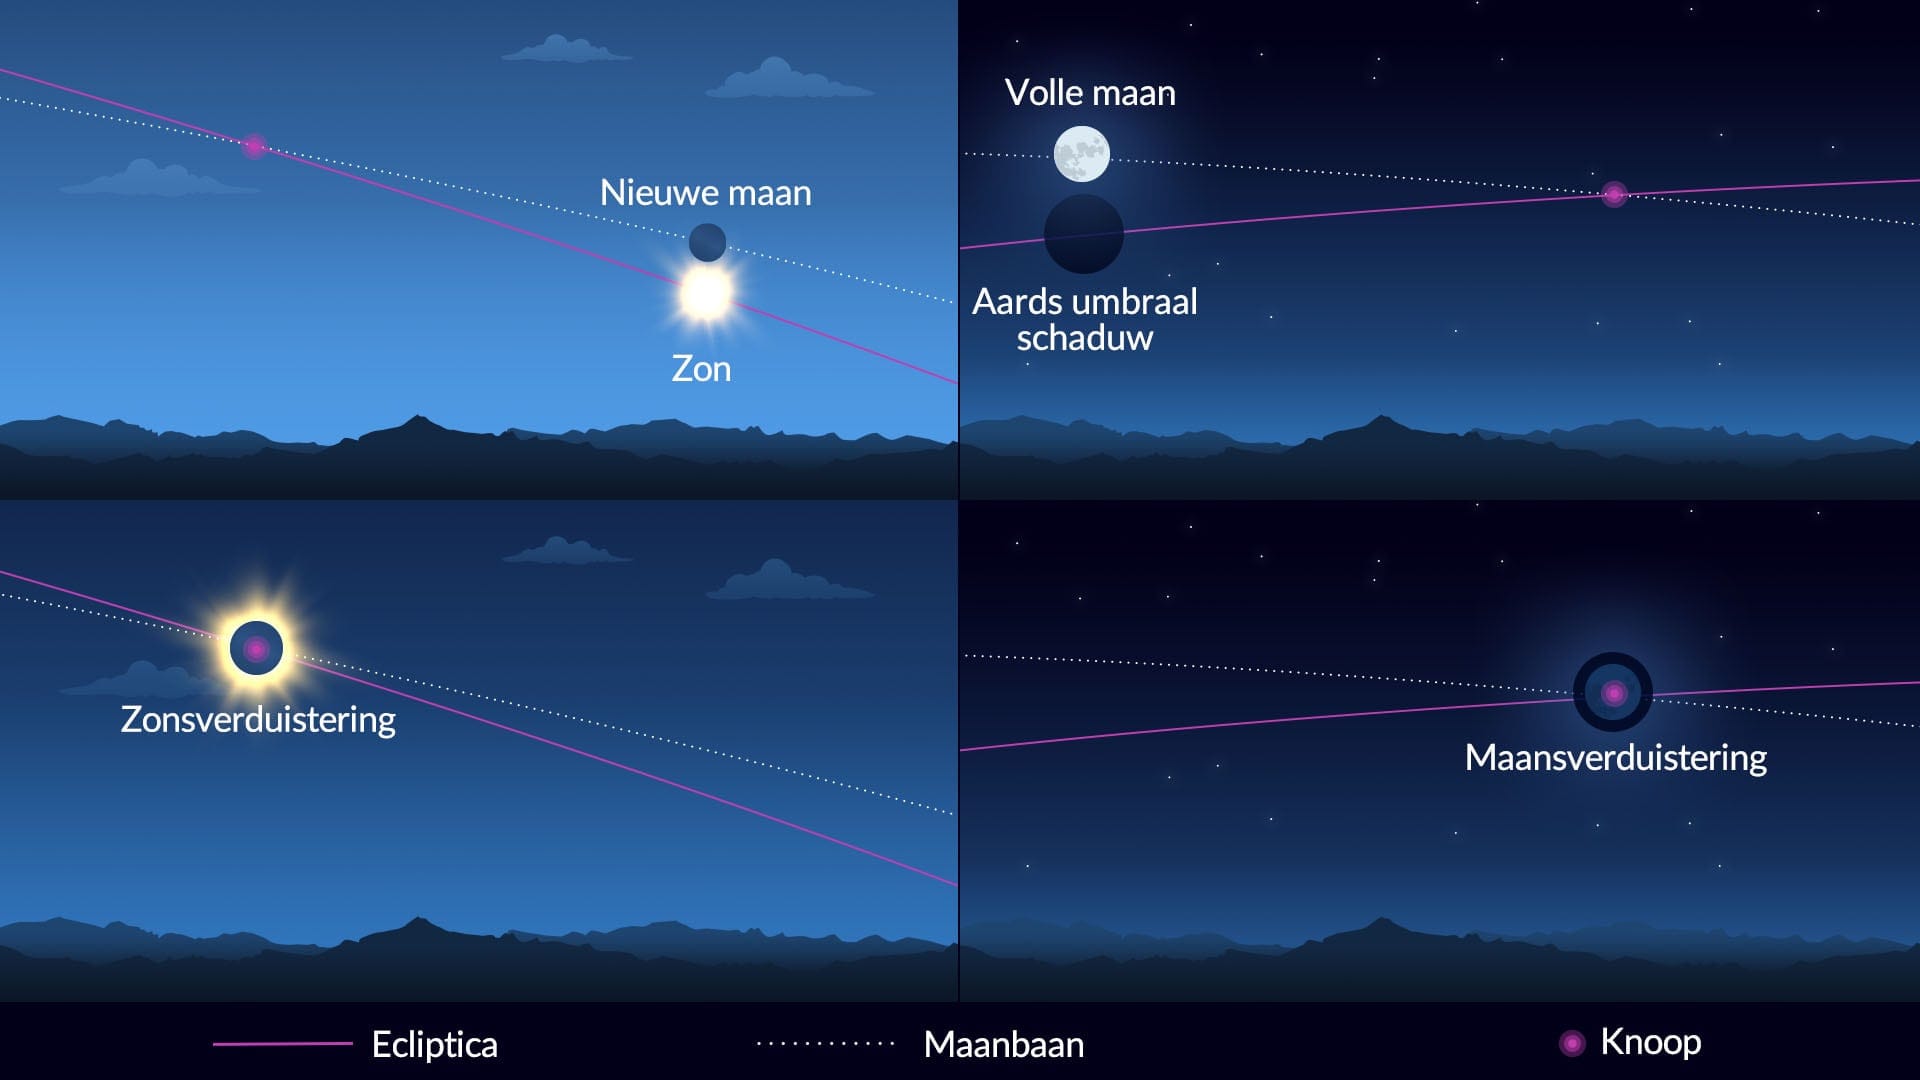 De knopen van de maan - zons- en maansverduisteringen